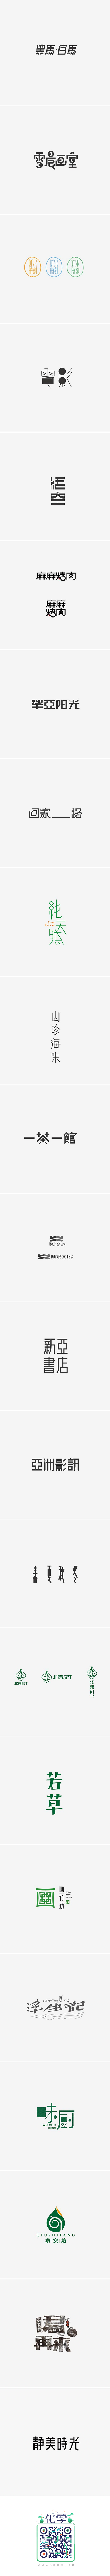 琢-设计 字体合集一_字体传奇网-中国首...